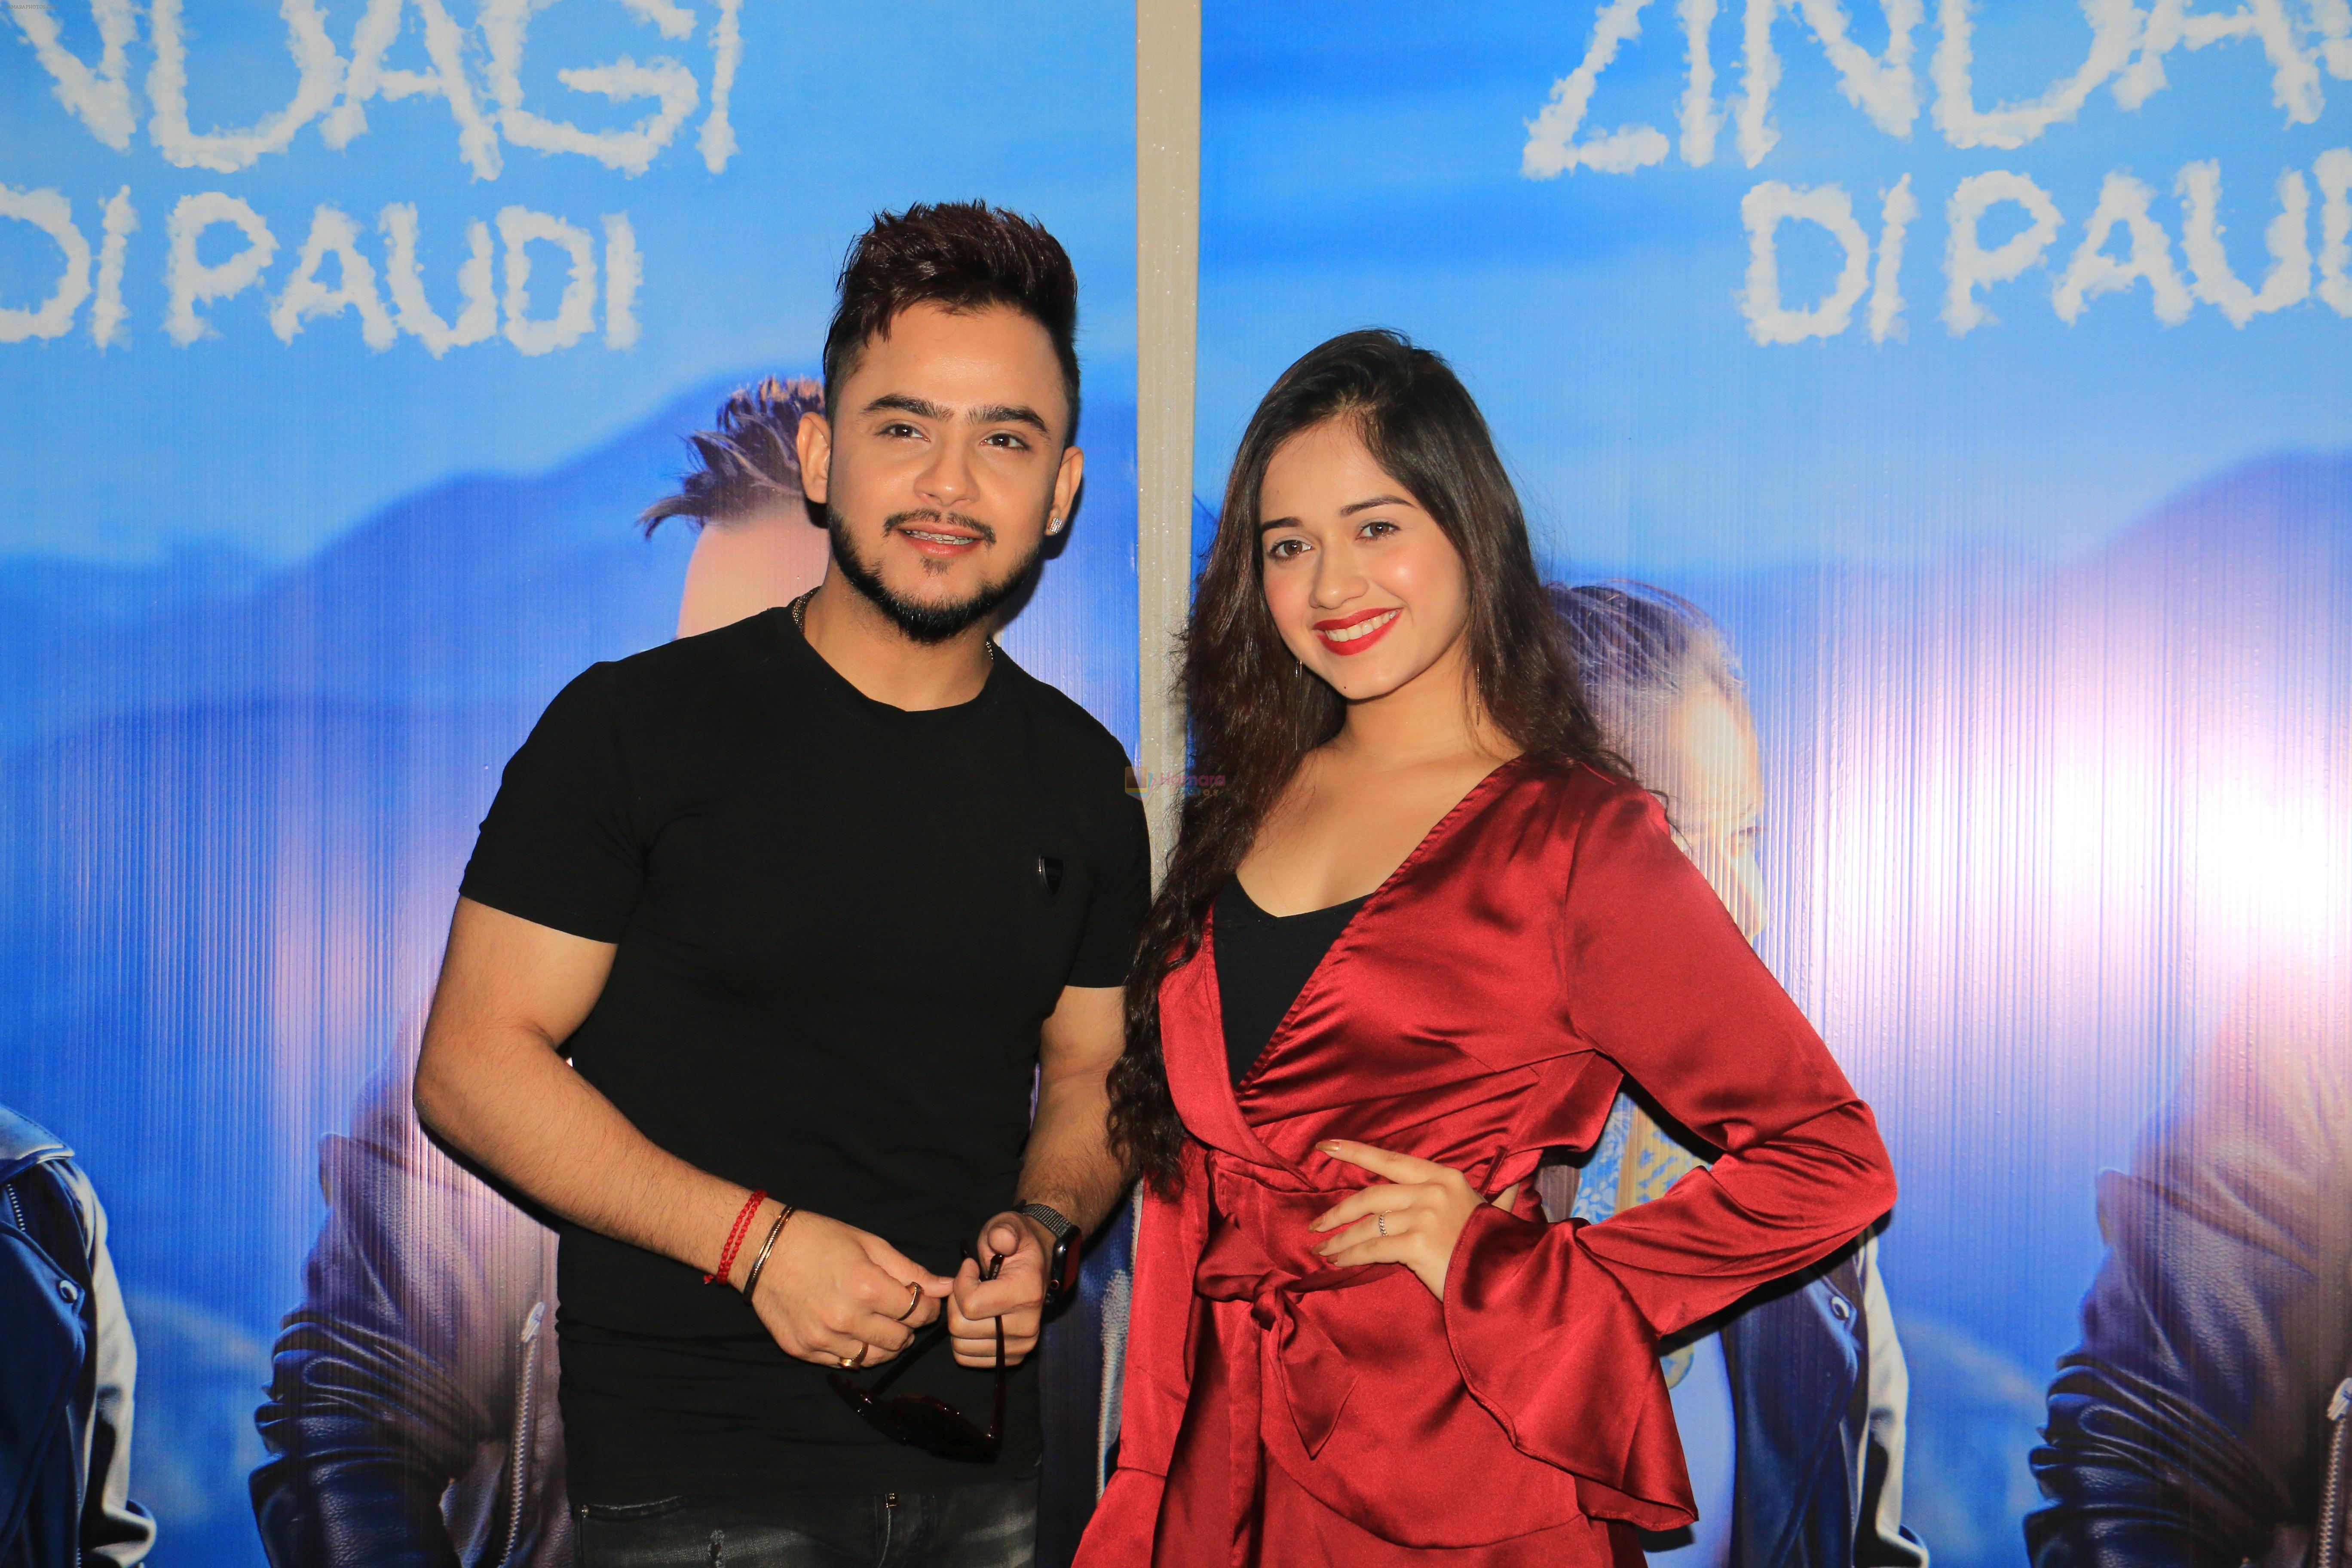 Millind Gaba, Jannat Zubair at Zindagi Di Paudi song launch at Hard Rock Cafe andheri on 6th June 2019